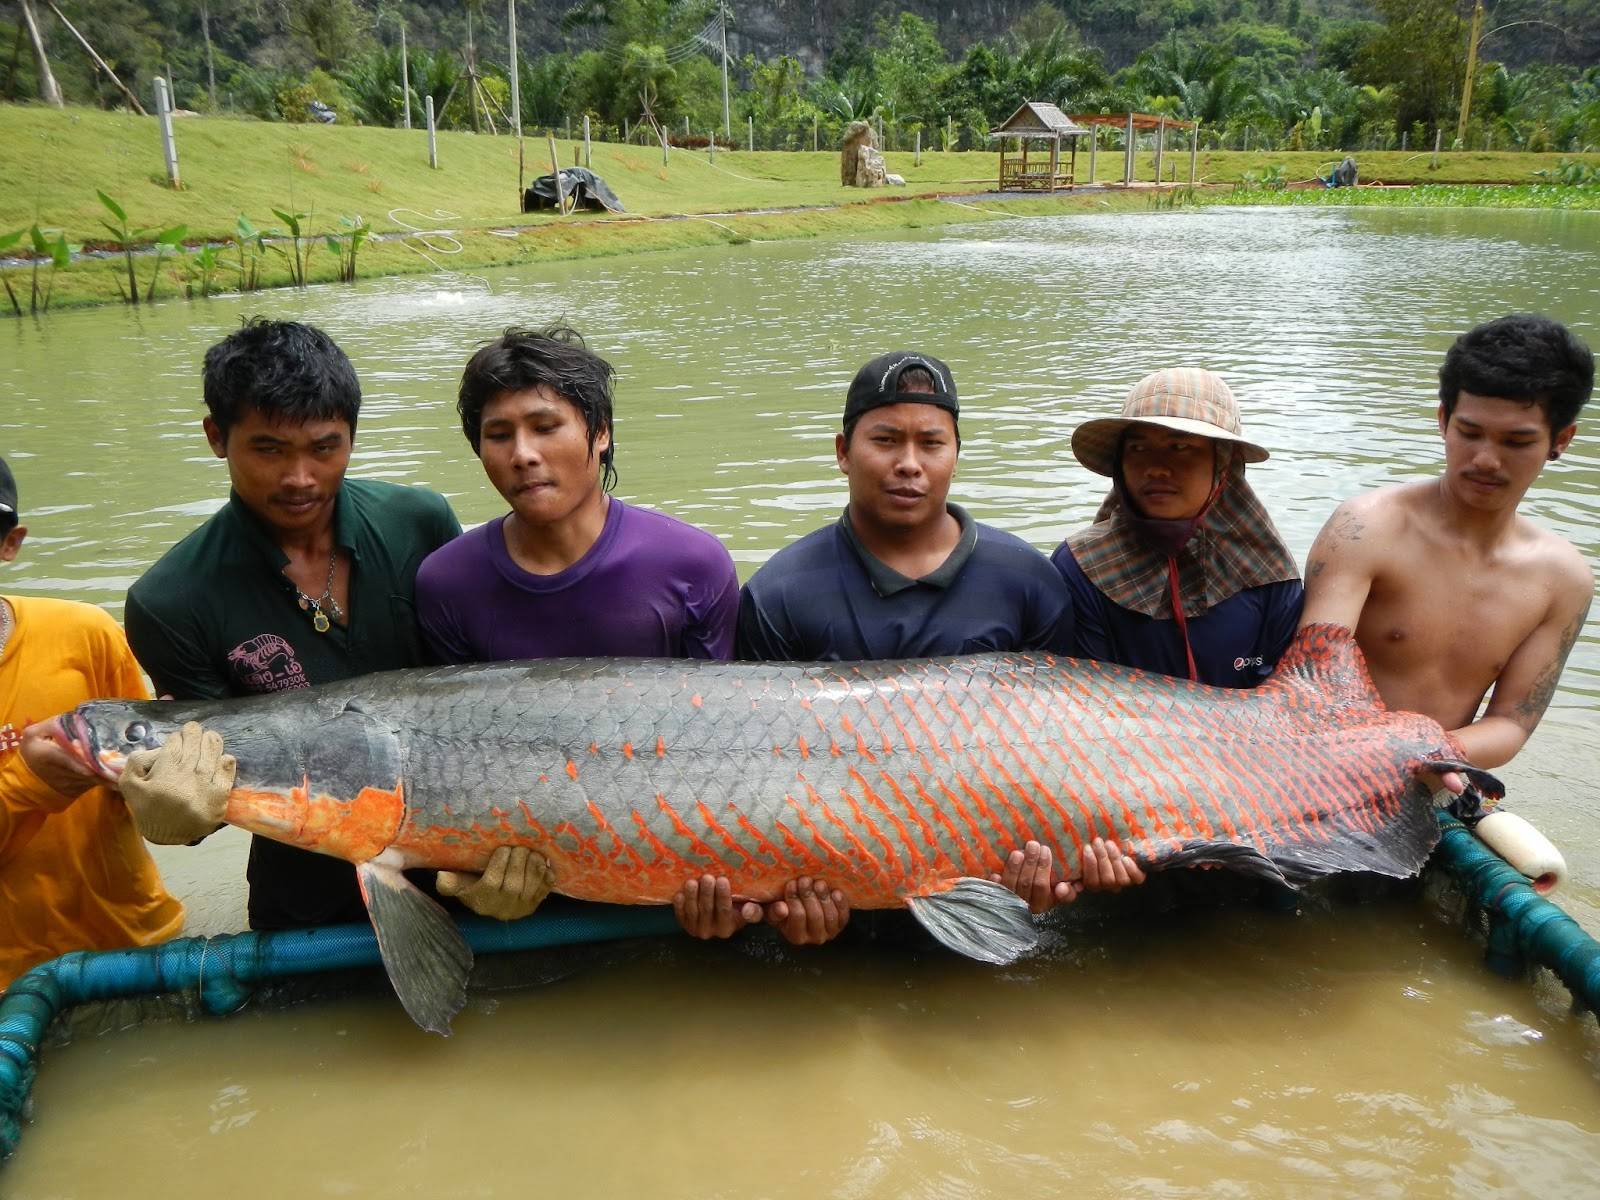 Арапайма (рыба): описание, среда обитания и фото